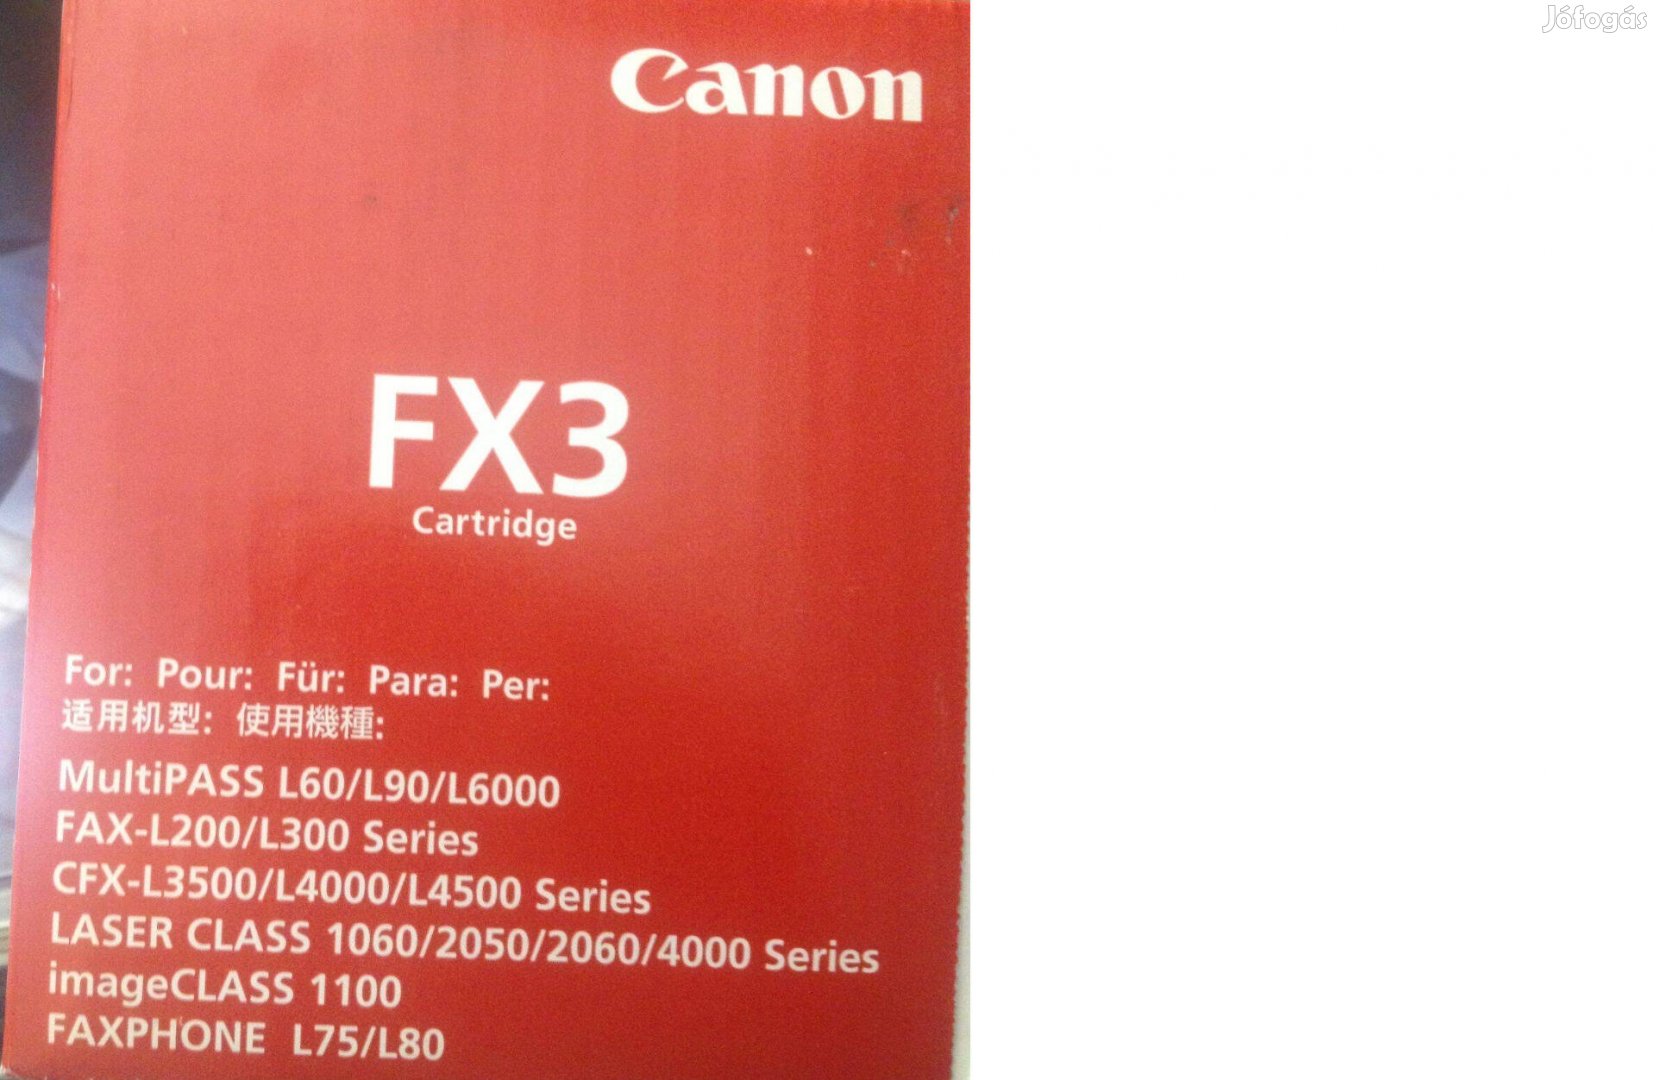 Eladó FX 3-as Canon toner!